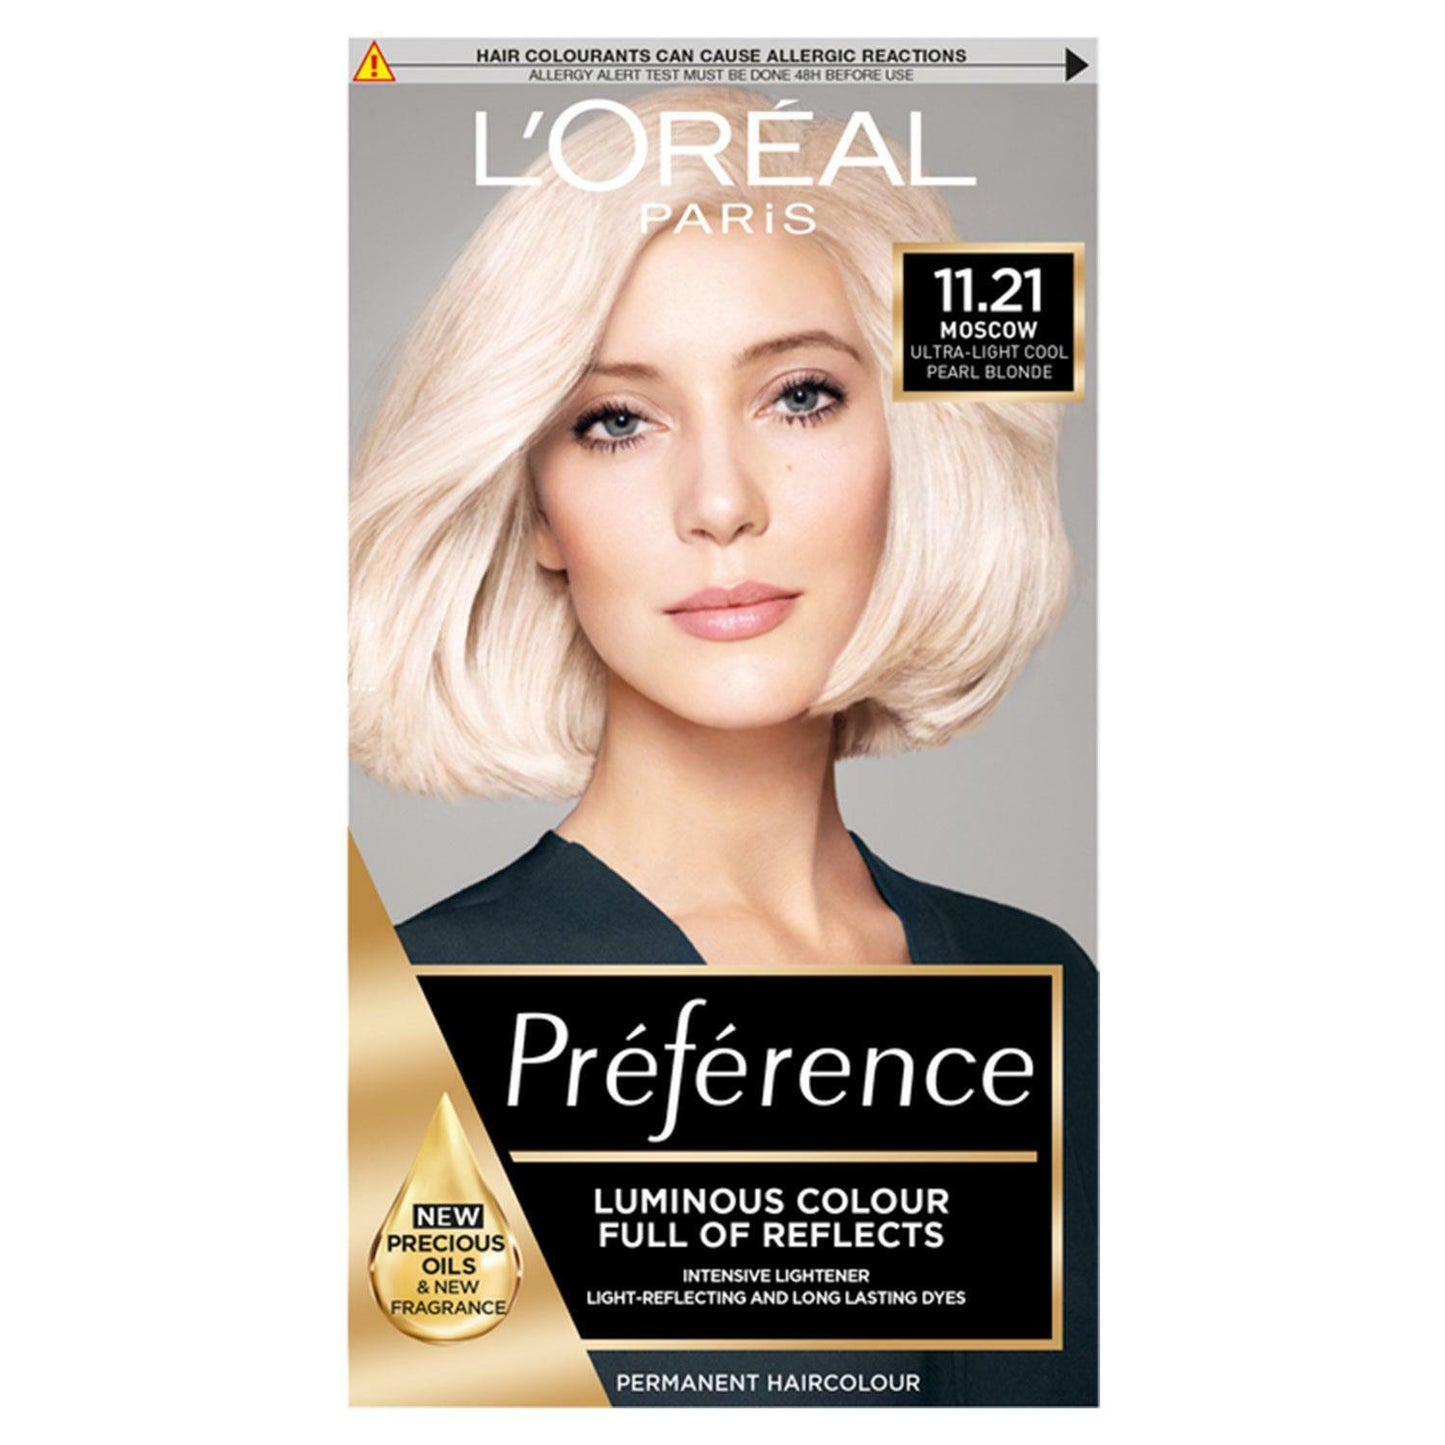 LOreal Paris Preference Vivid Colours Permanent Hair Dye